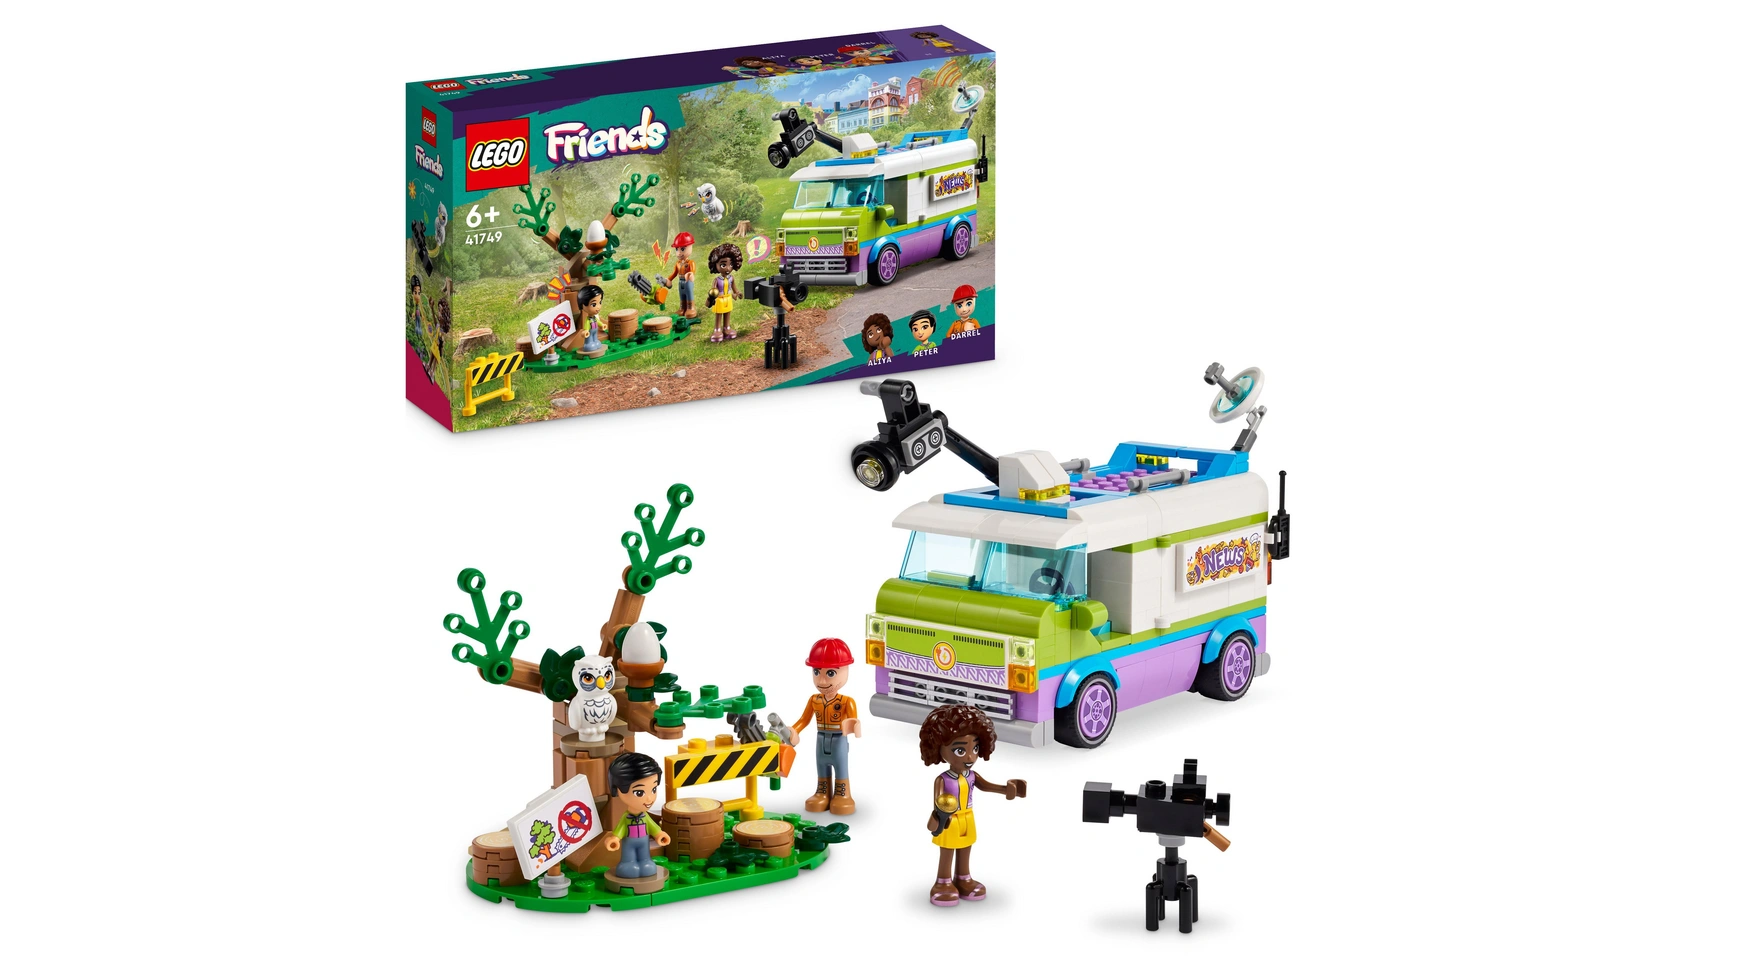 Lego Friends News Van игрушка для детей по спасению животных